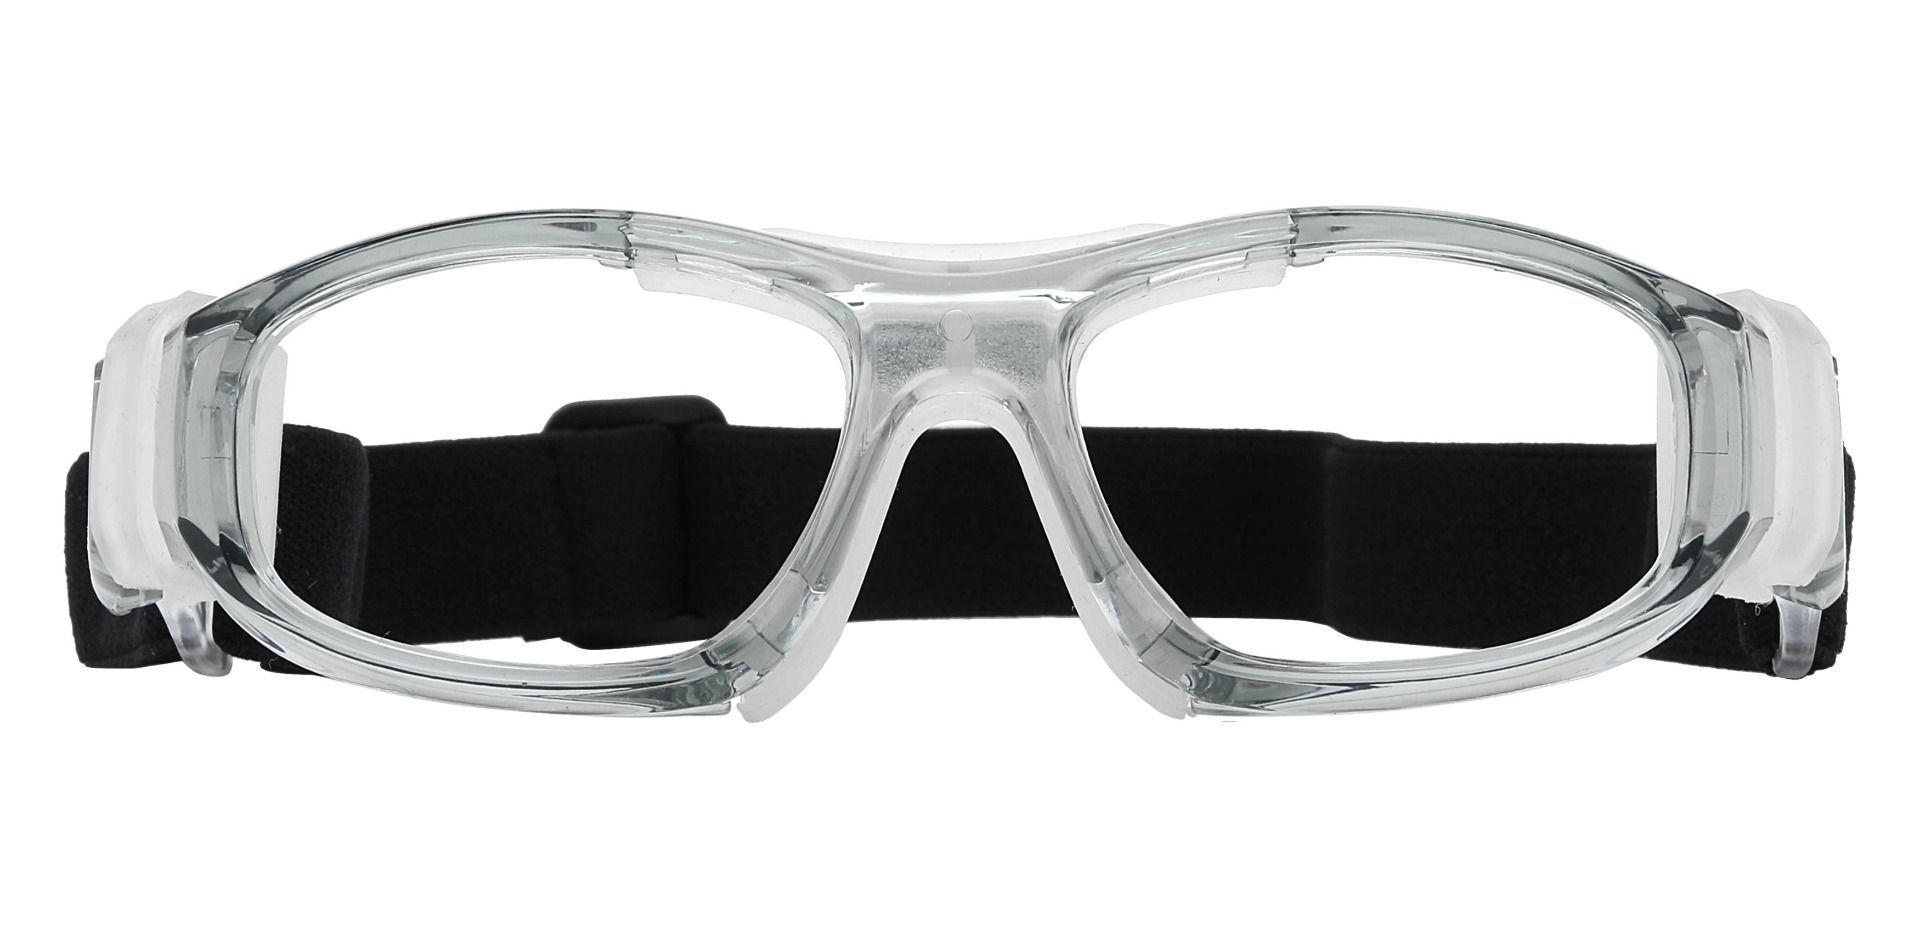 Paxton Sports Goggles Prescription Glasses - Gray